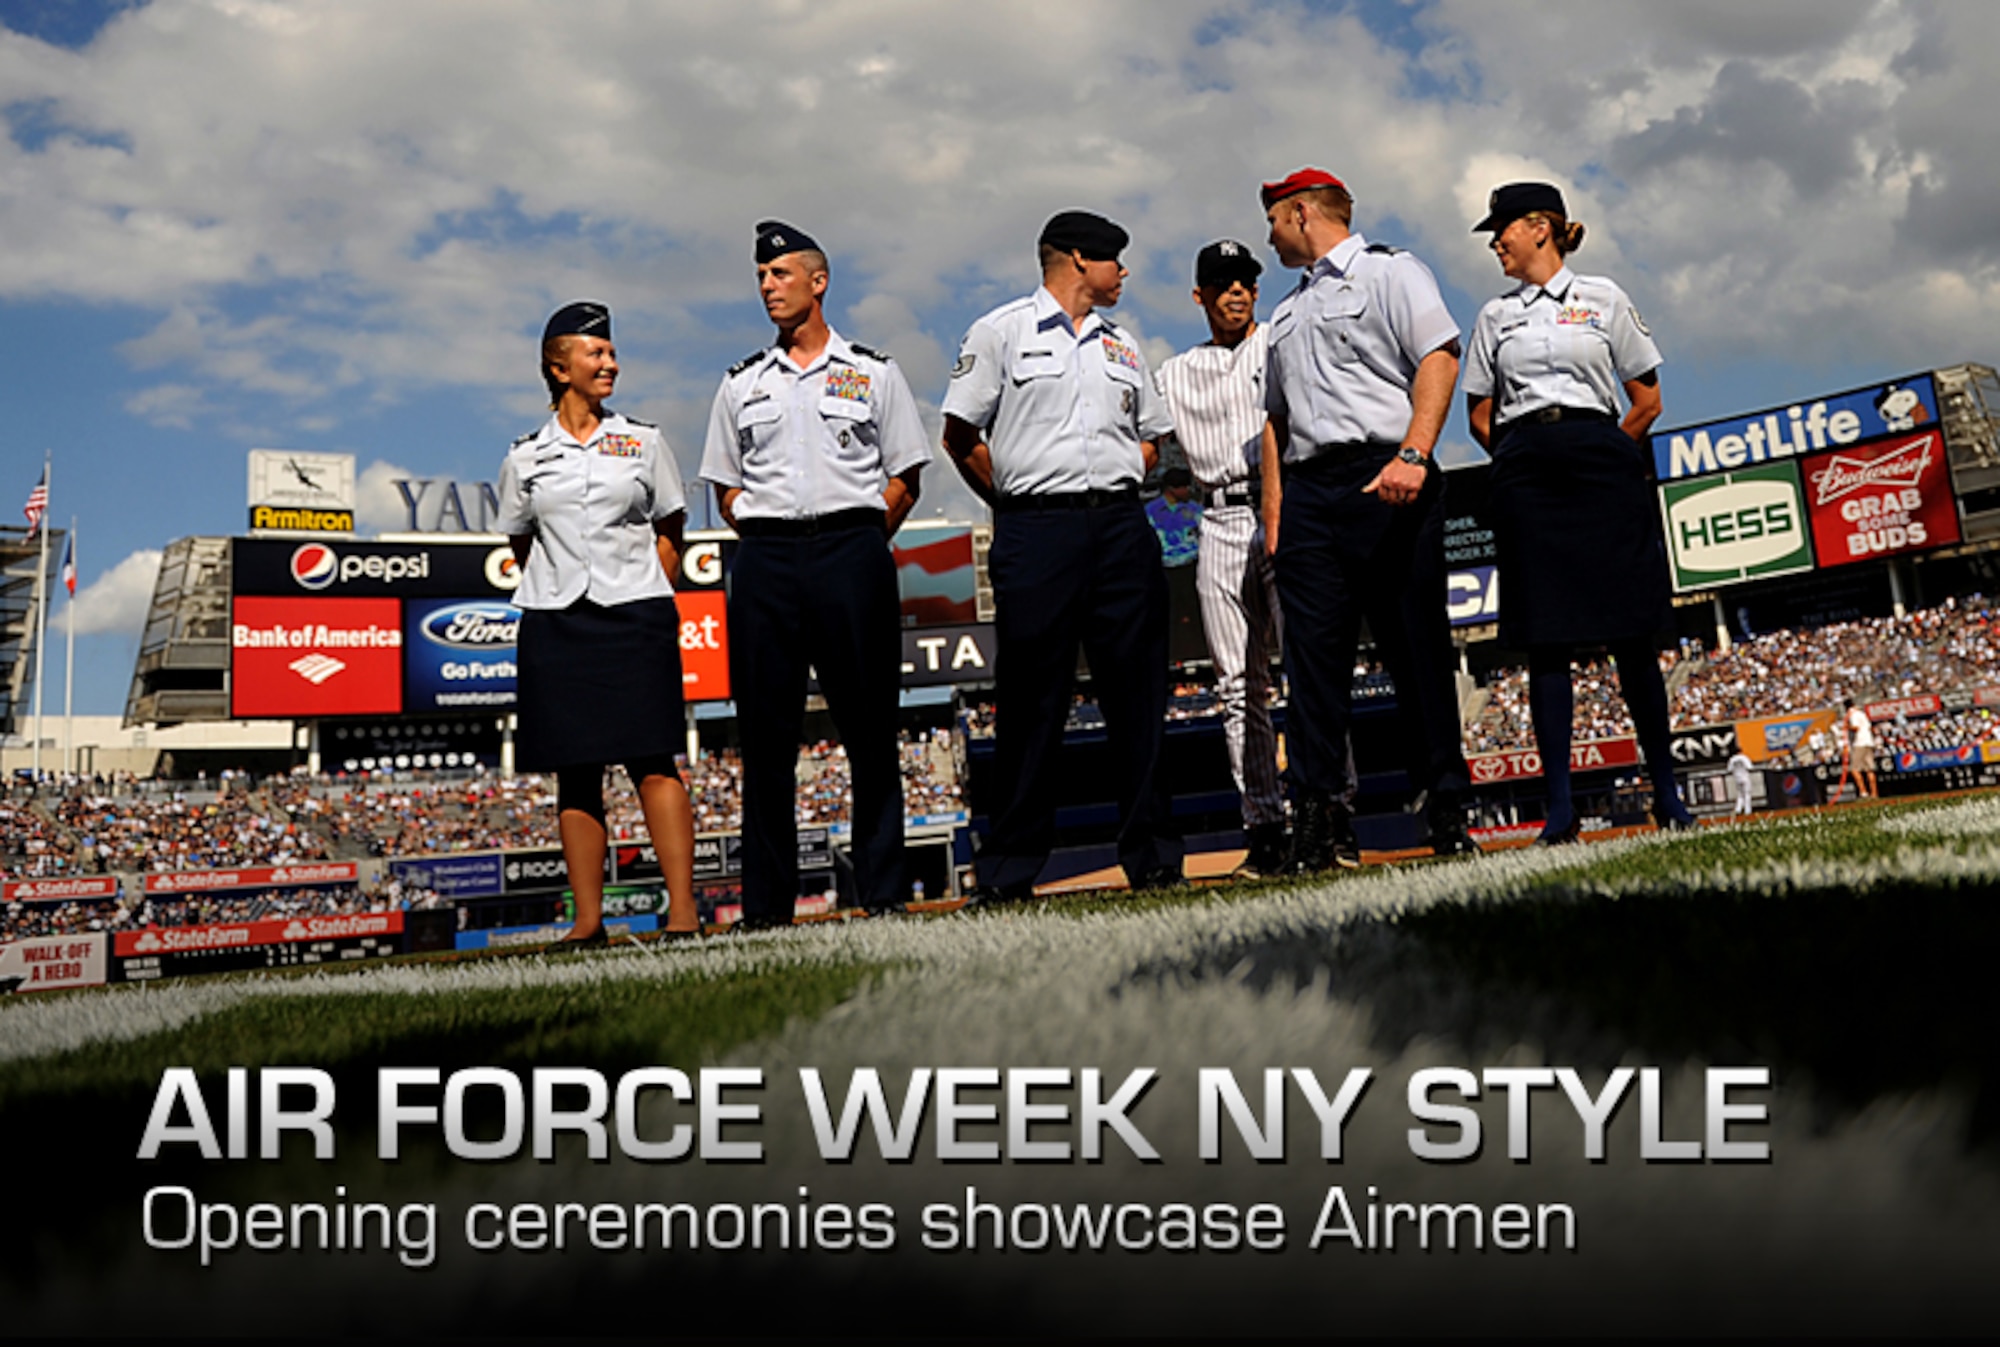 Opening ceremonies kick off Air Force Week activities > Air Force